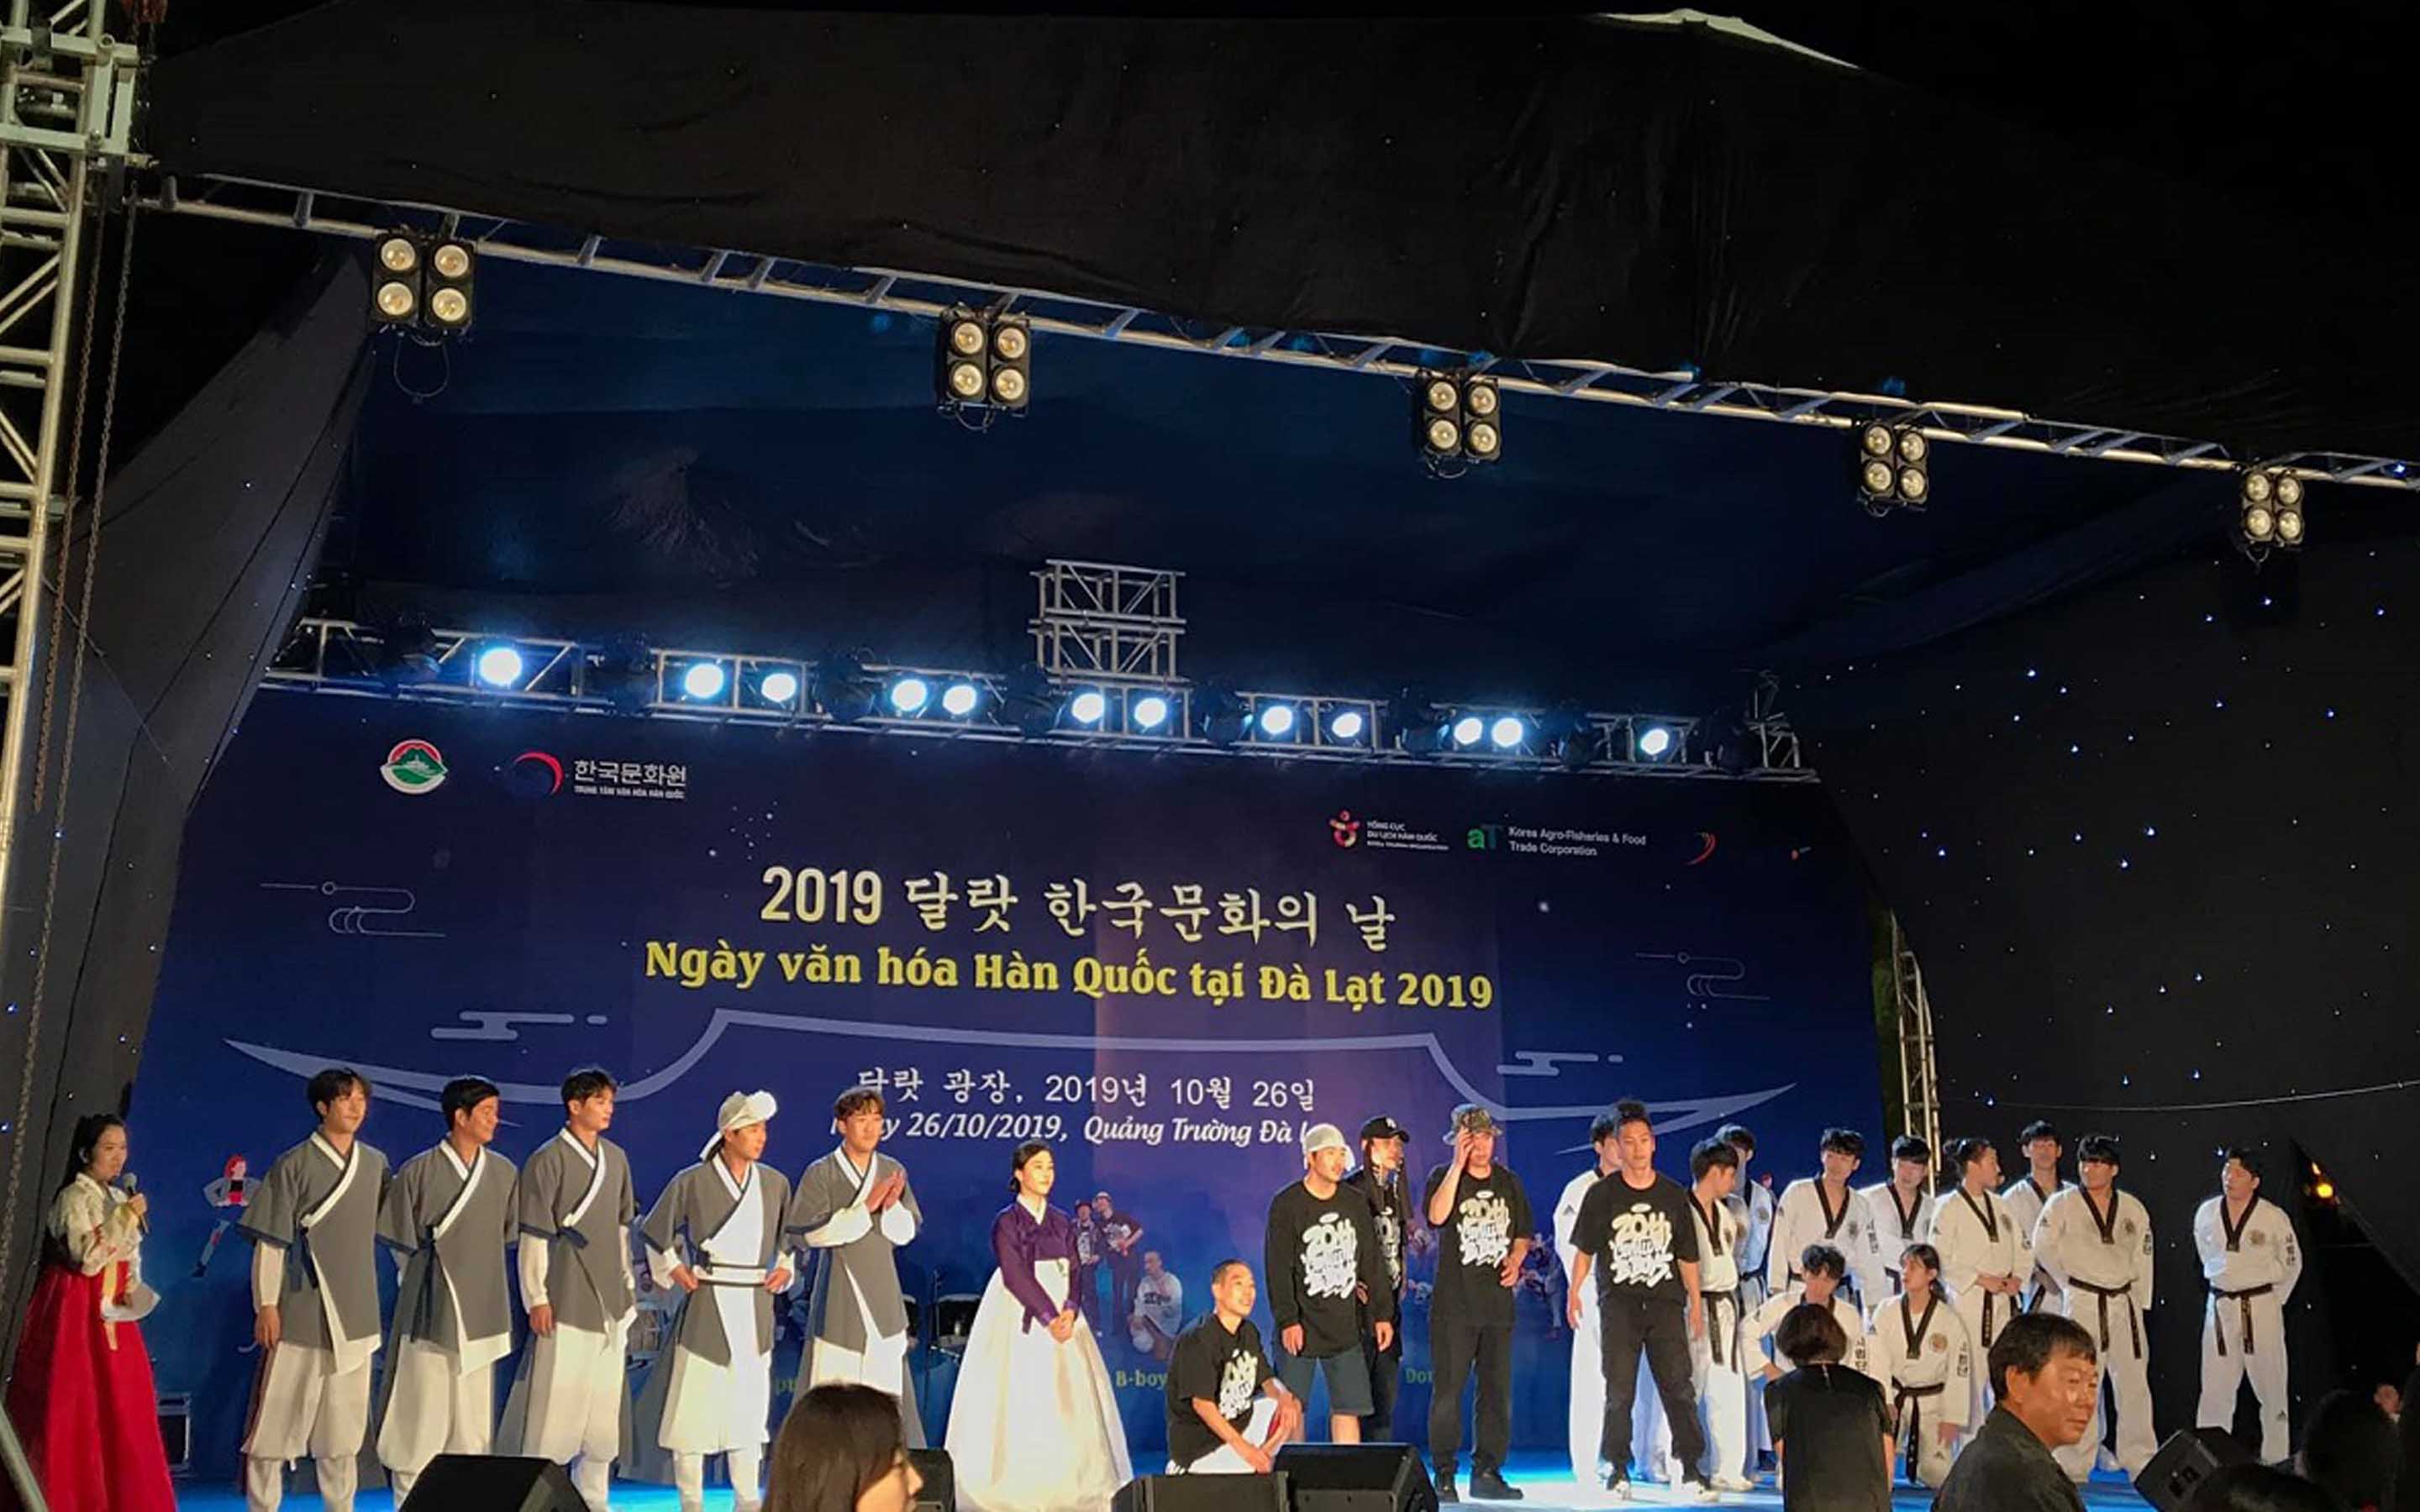 Ngày hội văn hóa Hàn Quốc tại Đà Lạt 2019